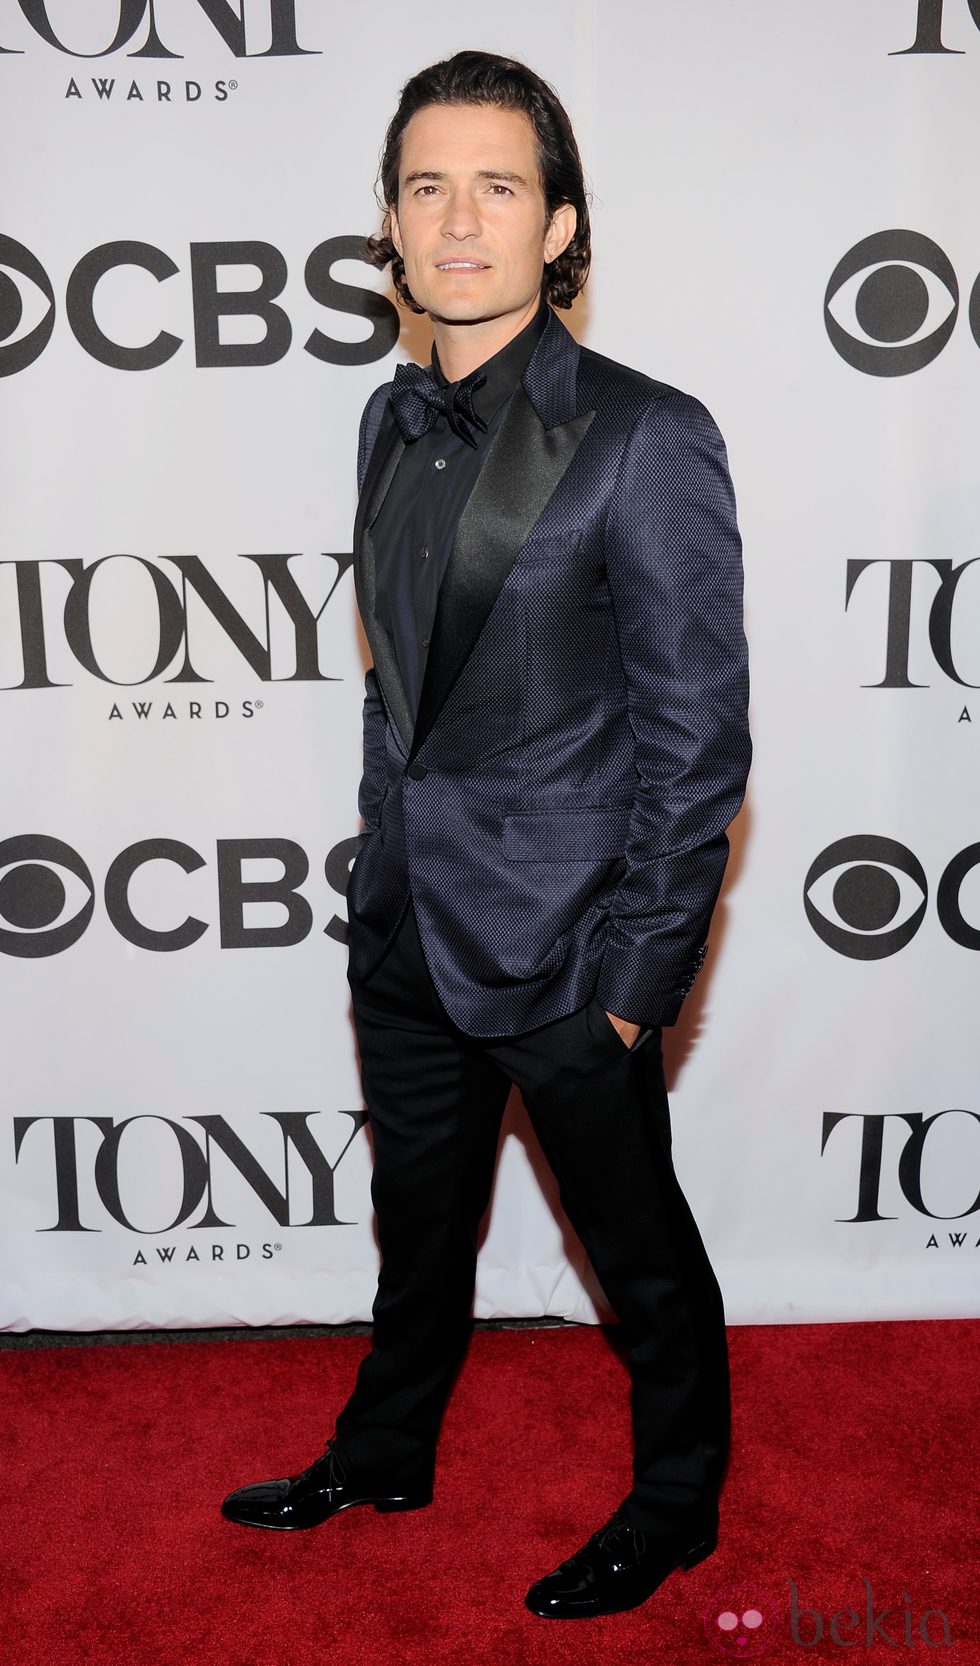 Orlando Bloom en los Premios Tony 2014